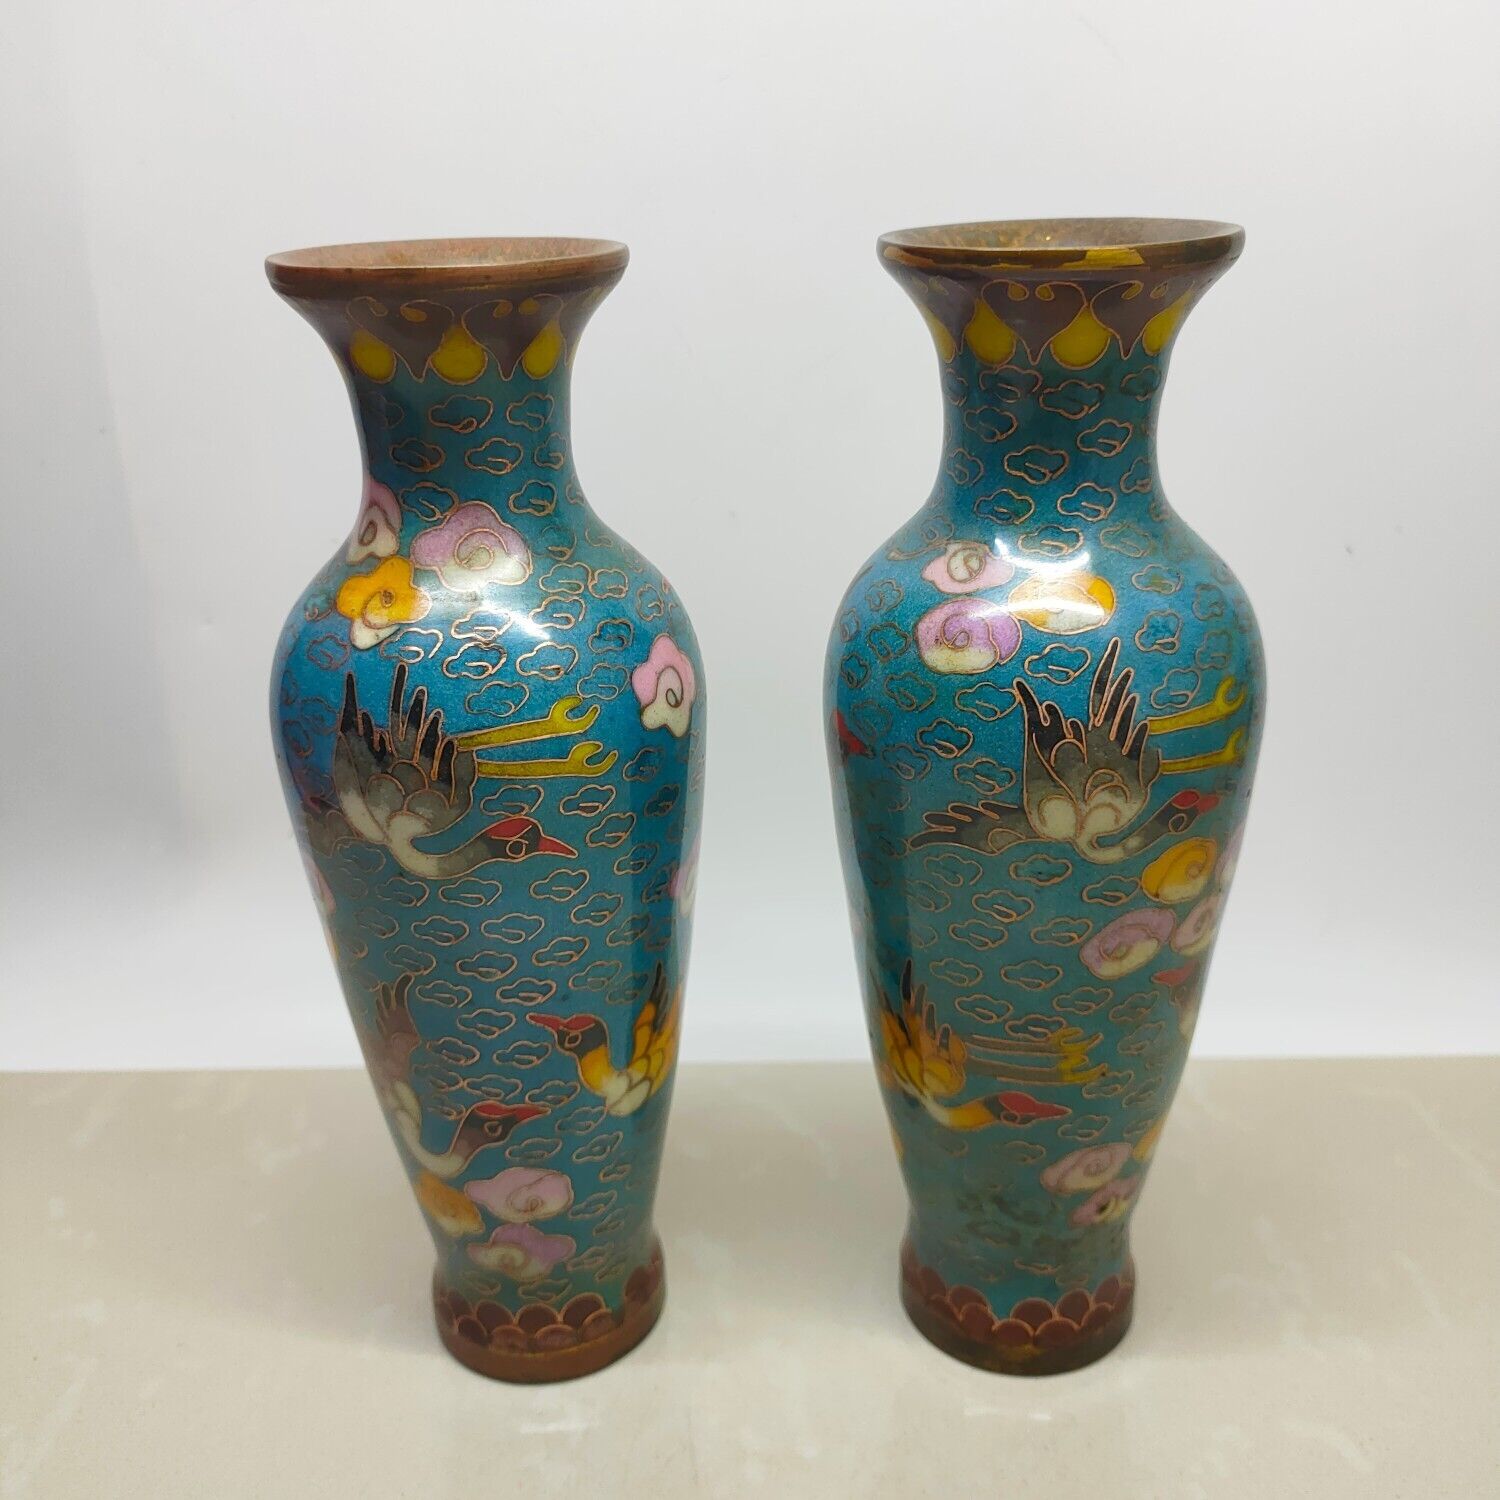 Exquisite old bronze copper Cloisonne enamel cloud crane flower bottle pair vase